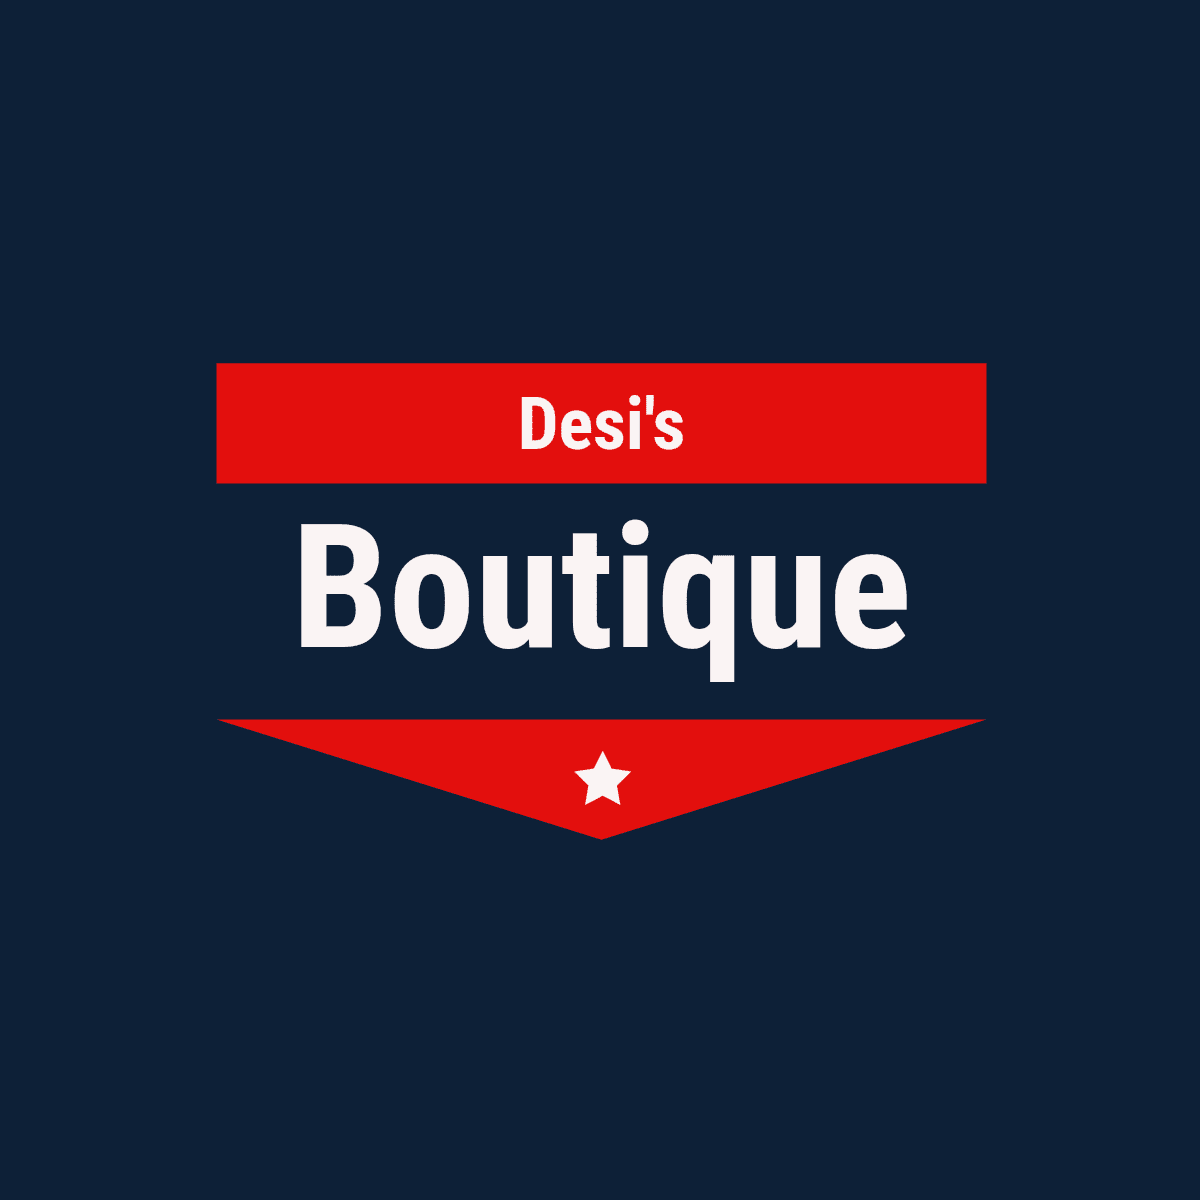 Desi's Boutique